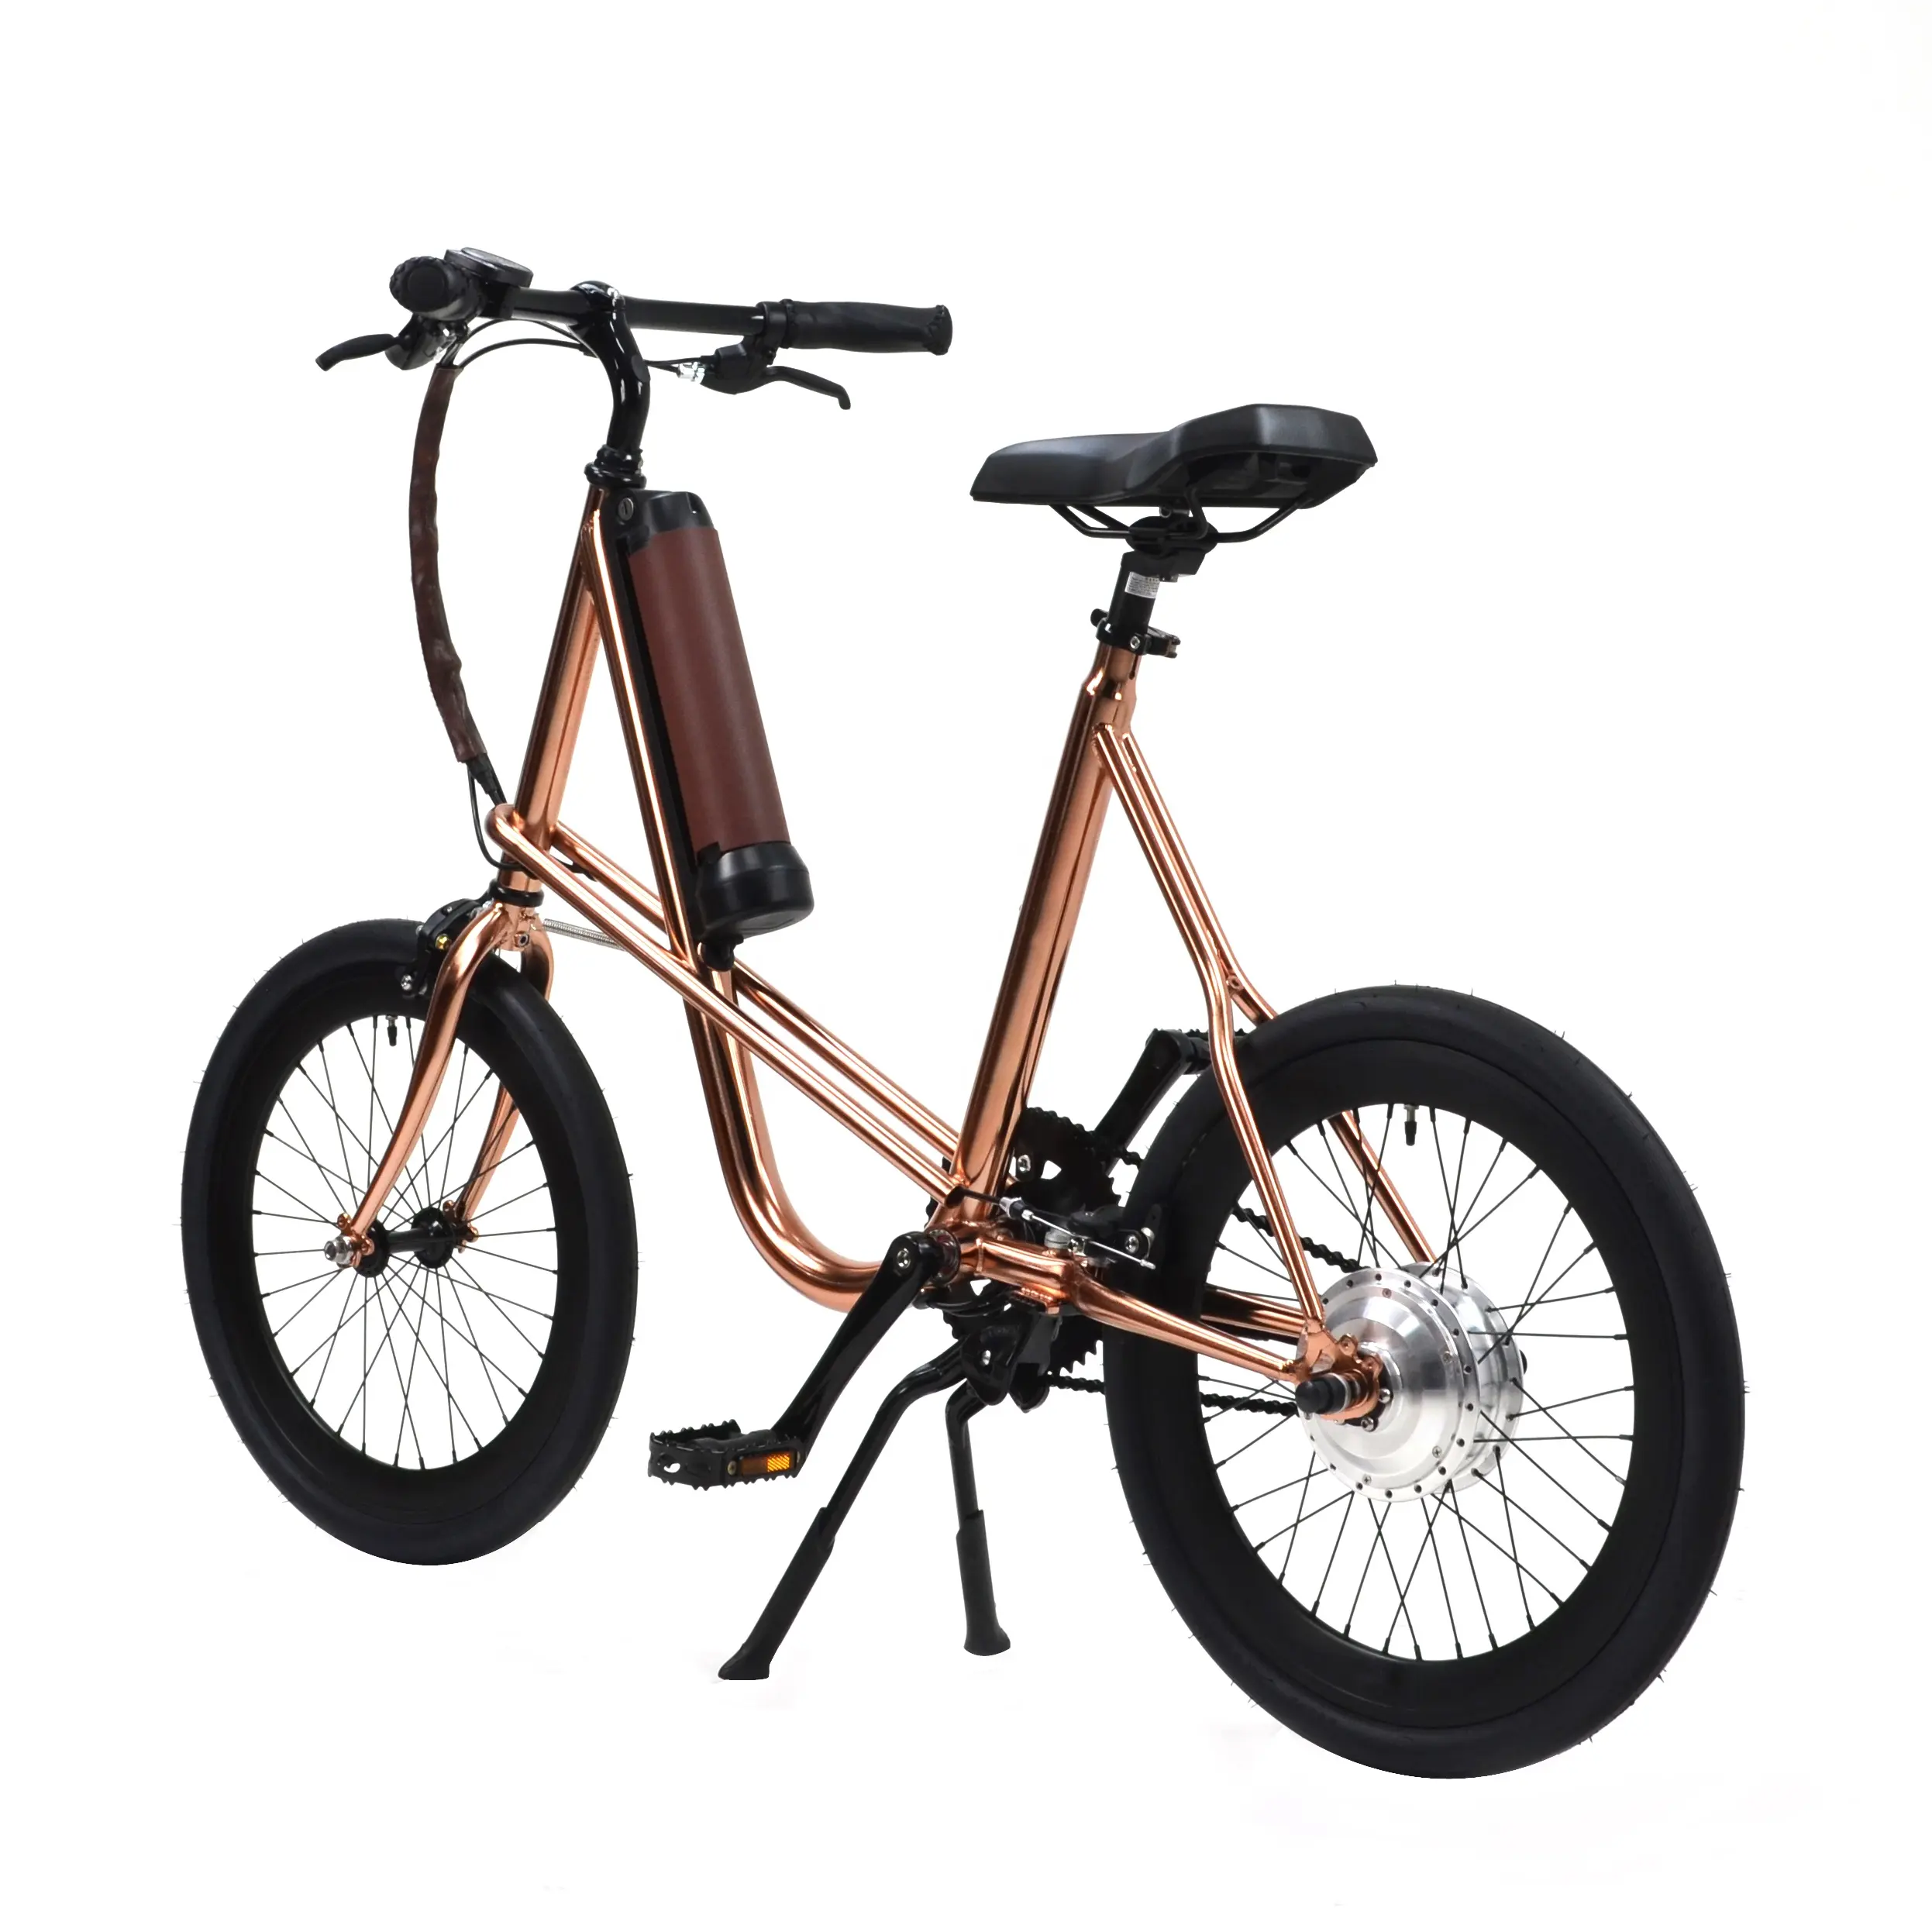 Rivenditore, distributore, agente bici elettrica e-bike pedelec city style EN certifica SEic miniu oro rosa